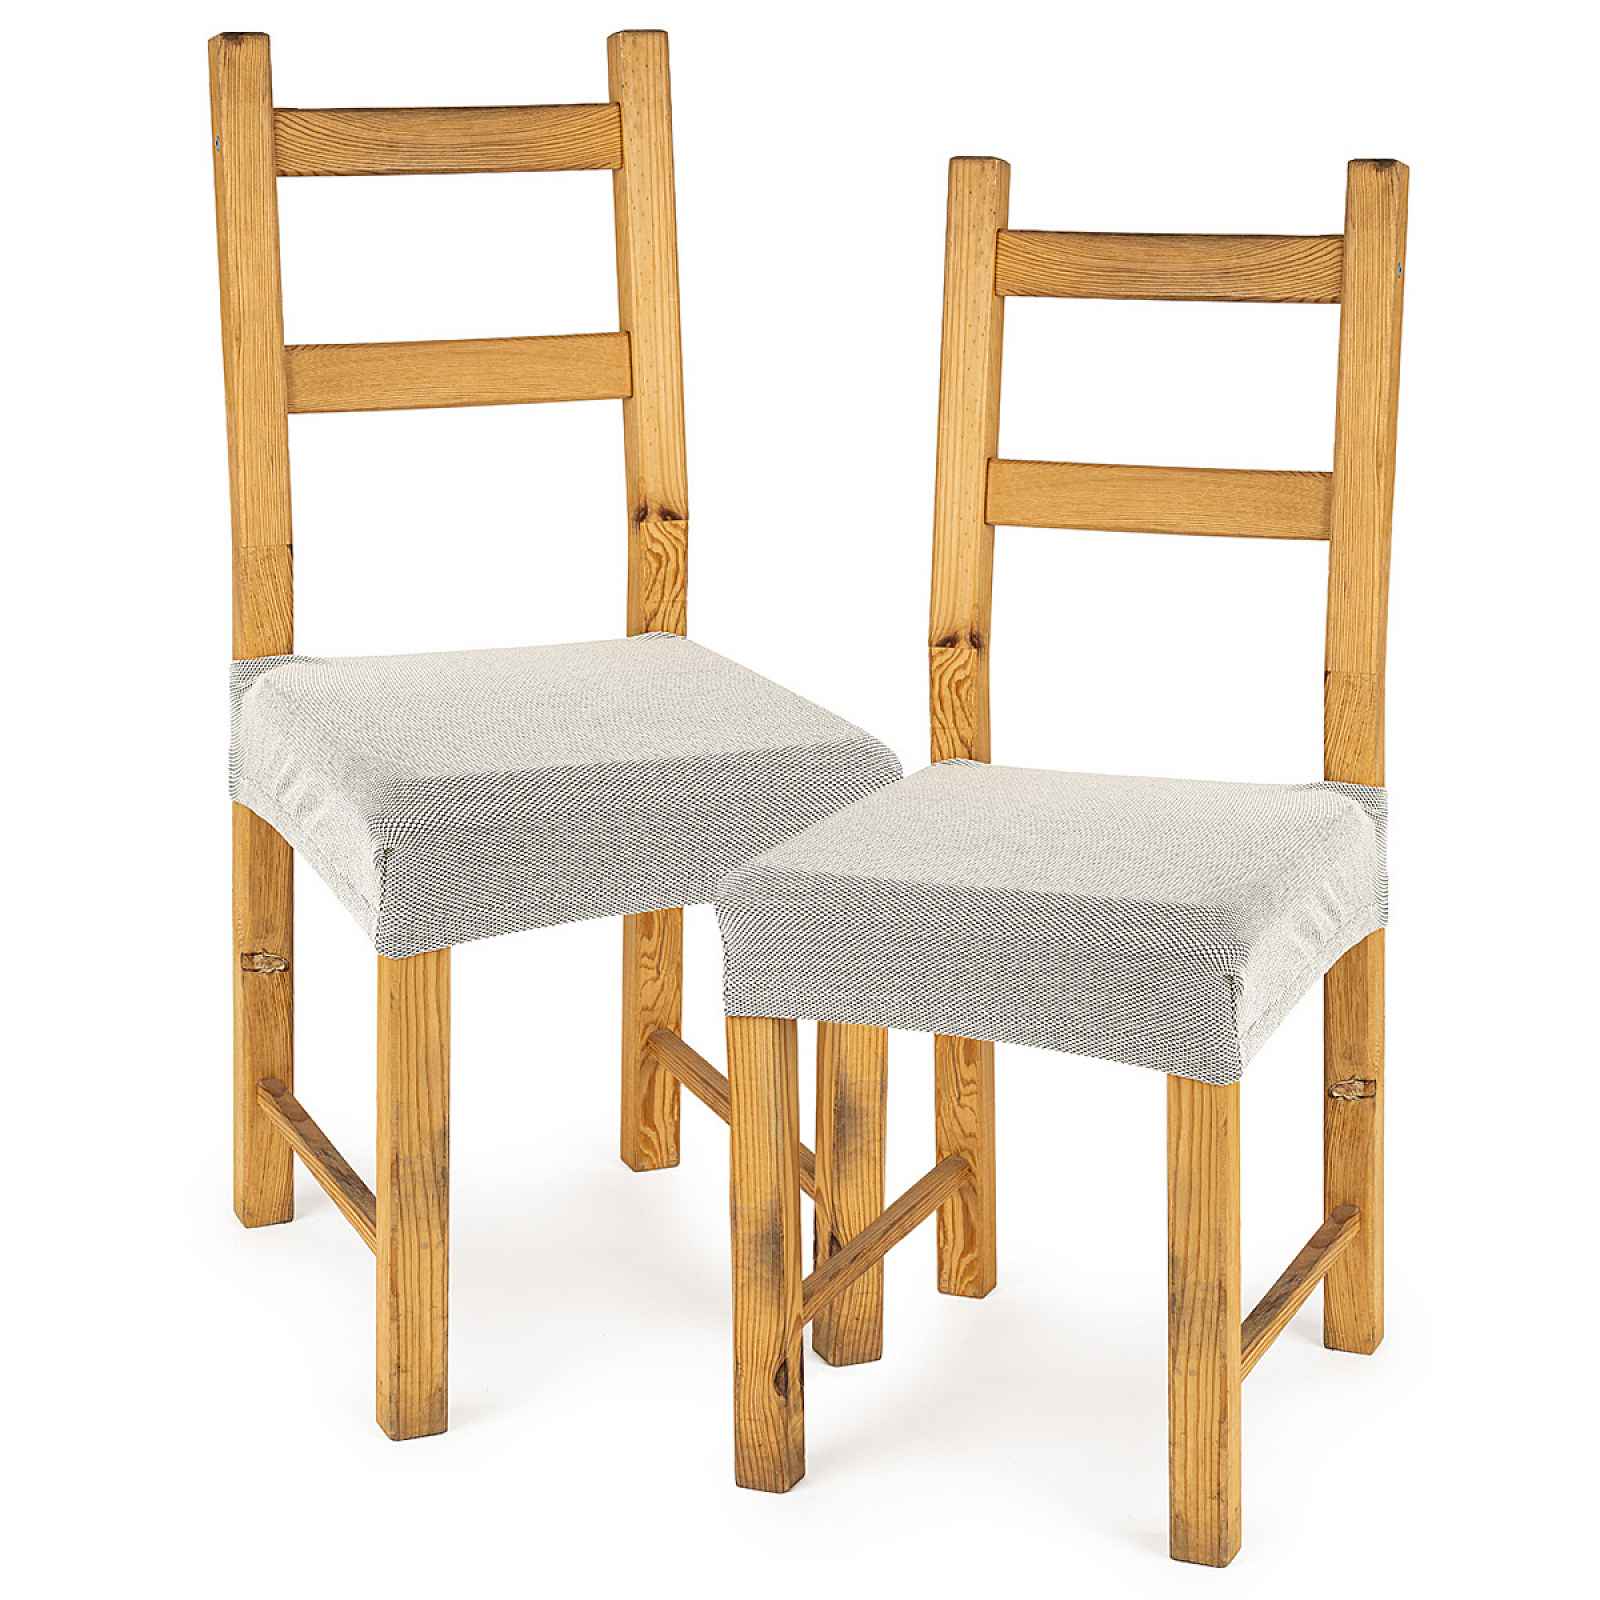 4Home Multielastický potah na sedák na židli Comfort smetanová, 40 - 50 cm, sada 2 ks